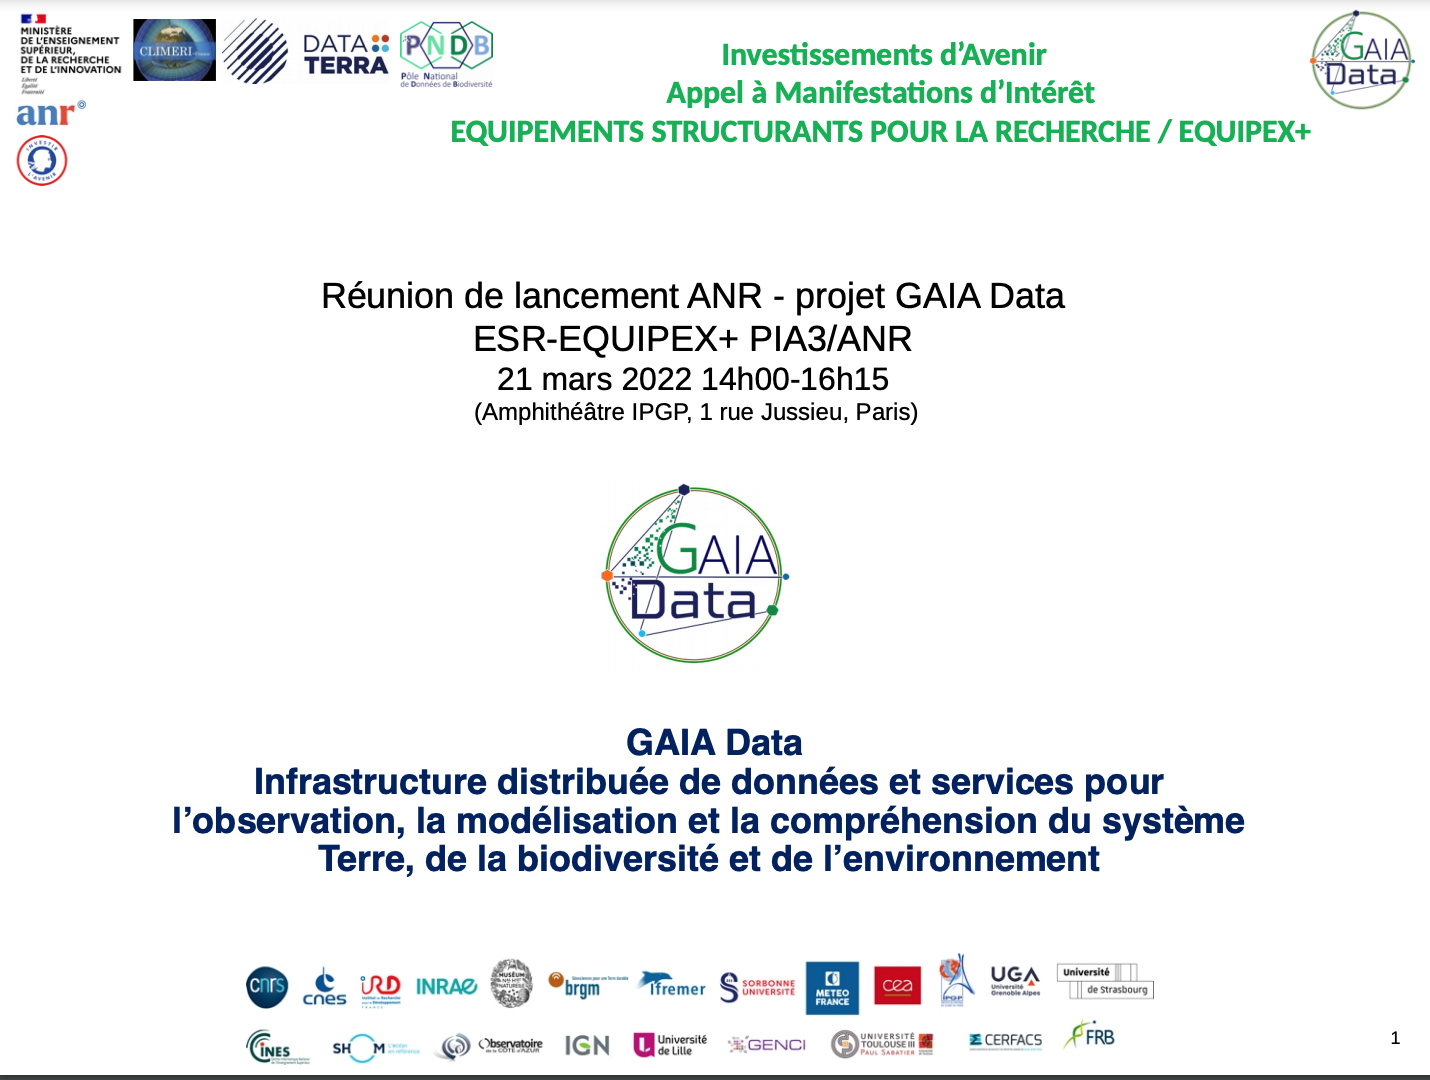 Réunion lancement ANR projet GAIA DATA